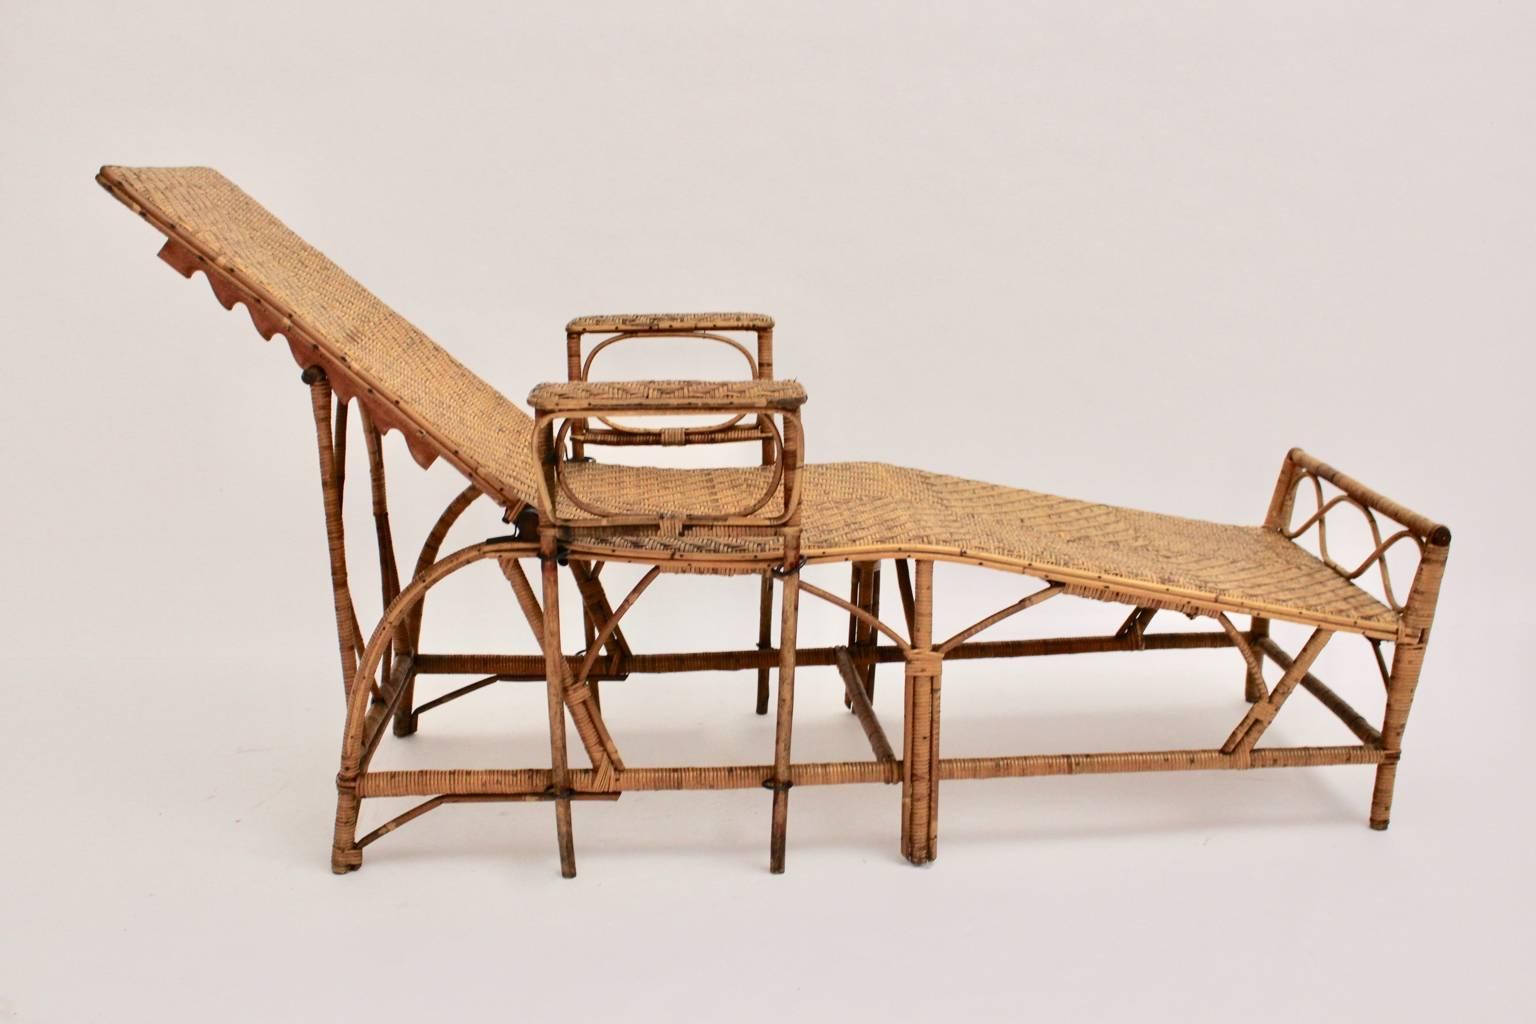 Chaise longue ou lit de jour vintage Art Deco en rotin, qui a été créé par Perret & Vibert attribué, France, années 1920.

Cette chaise longue rare et élégante dispose d'un dossier réglable (de 152 cm à 192 cm) et d'une hauteur réglable de 70 cm à